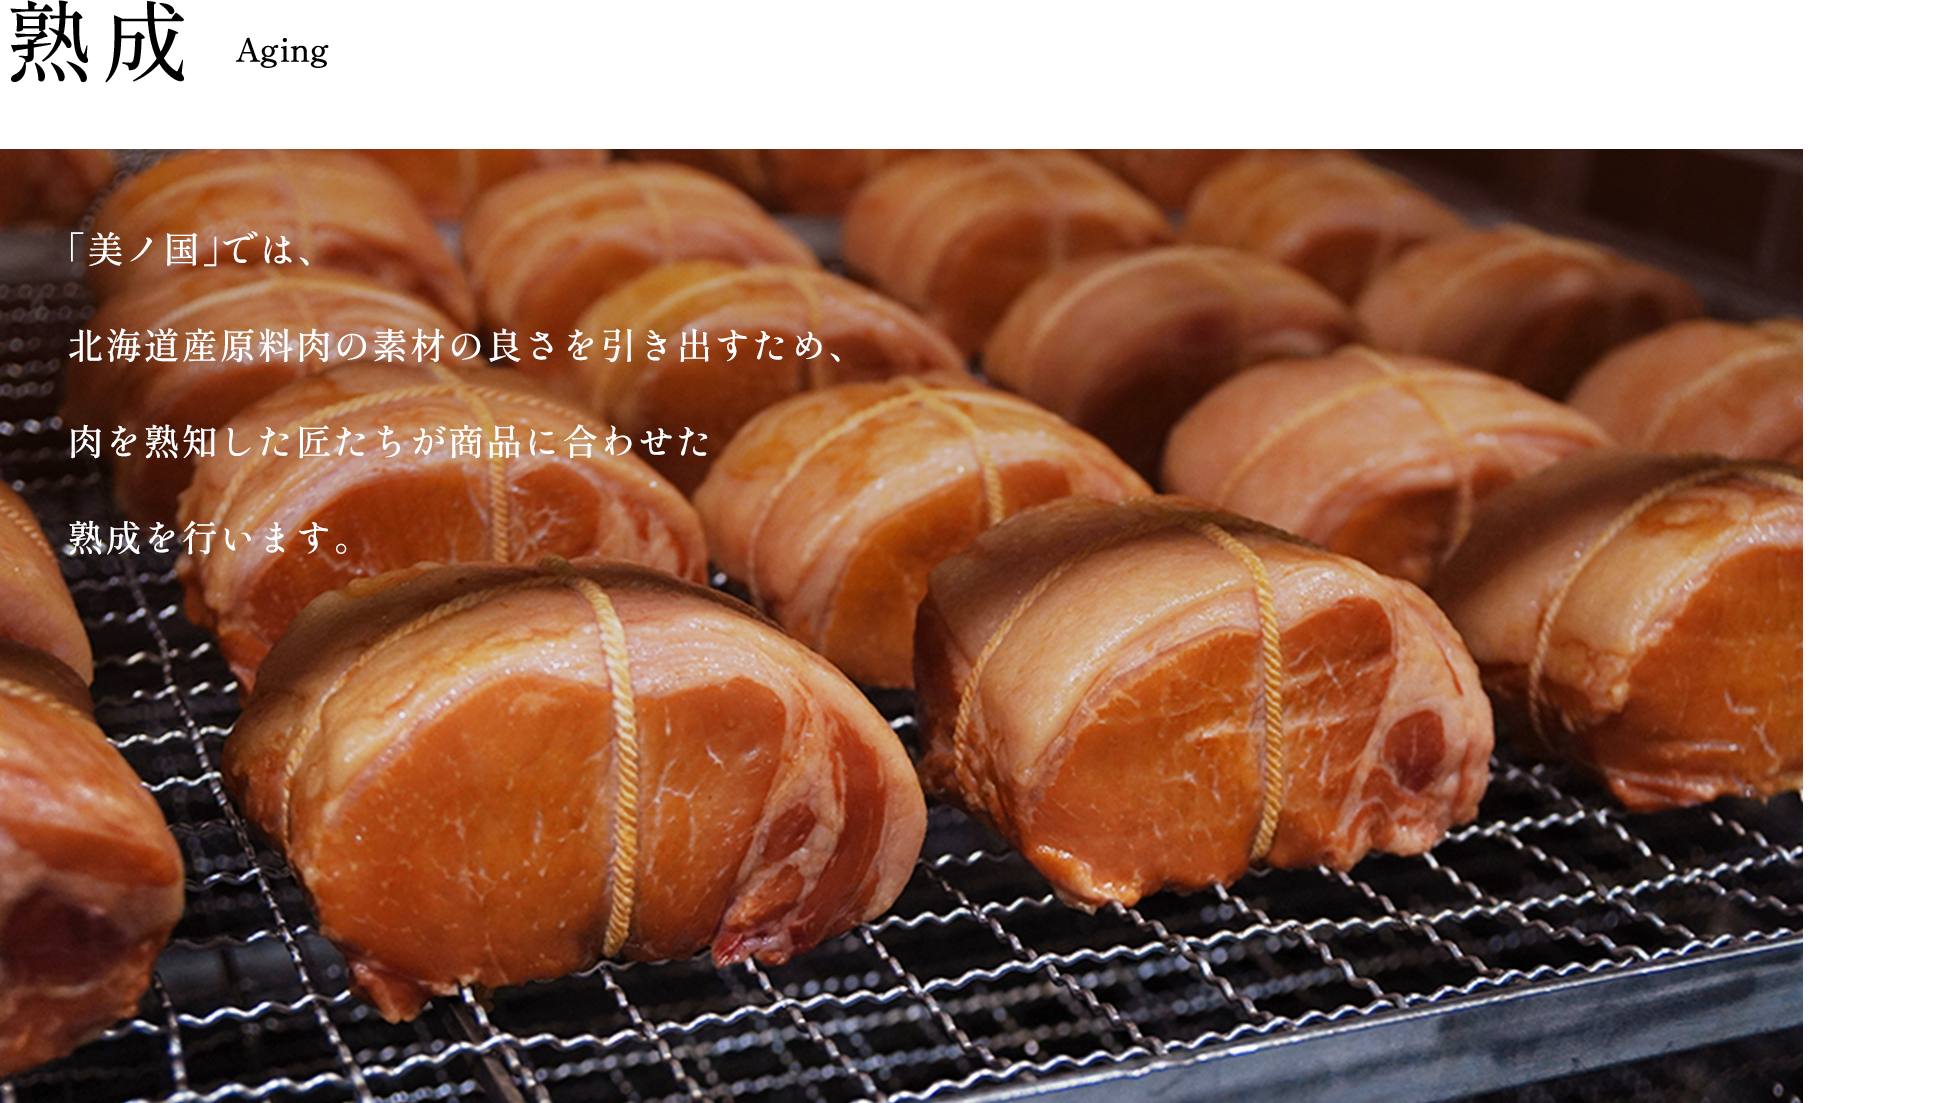 「美ノ国」では、北海道産原料肉の旨みと香りを引き出すため、肉を熟知した匠たちが1週間以上の時間をかけて丁寧に熟成をおこないます。